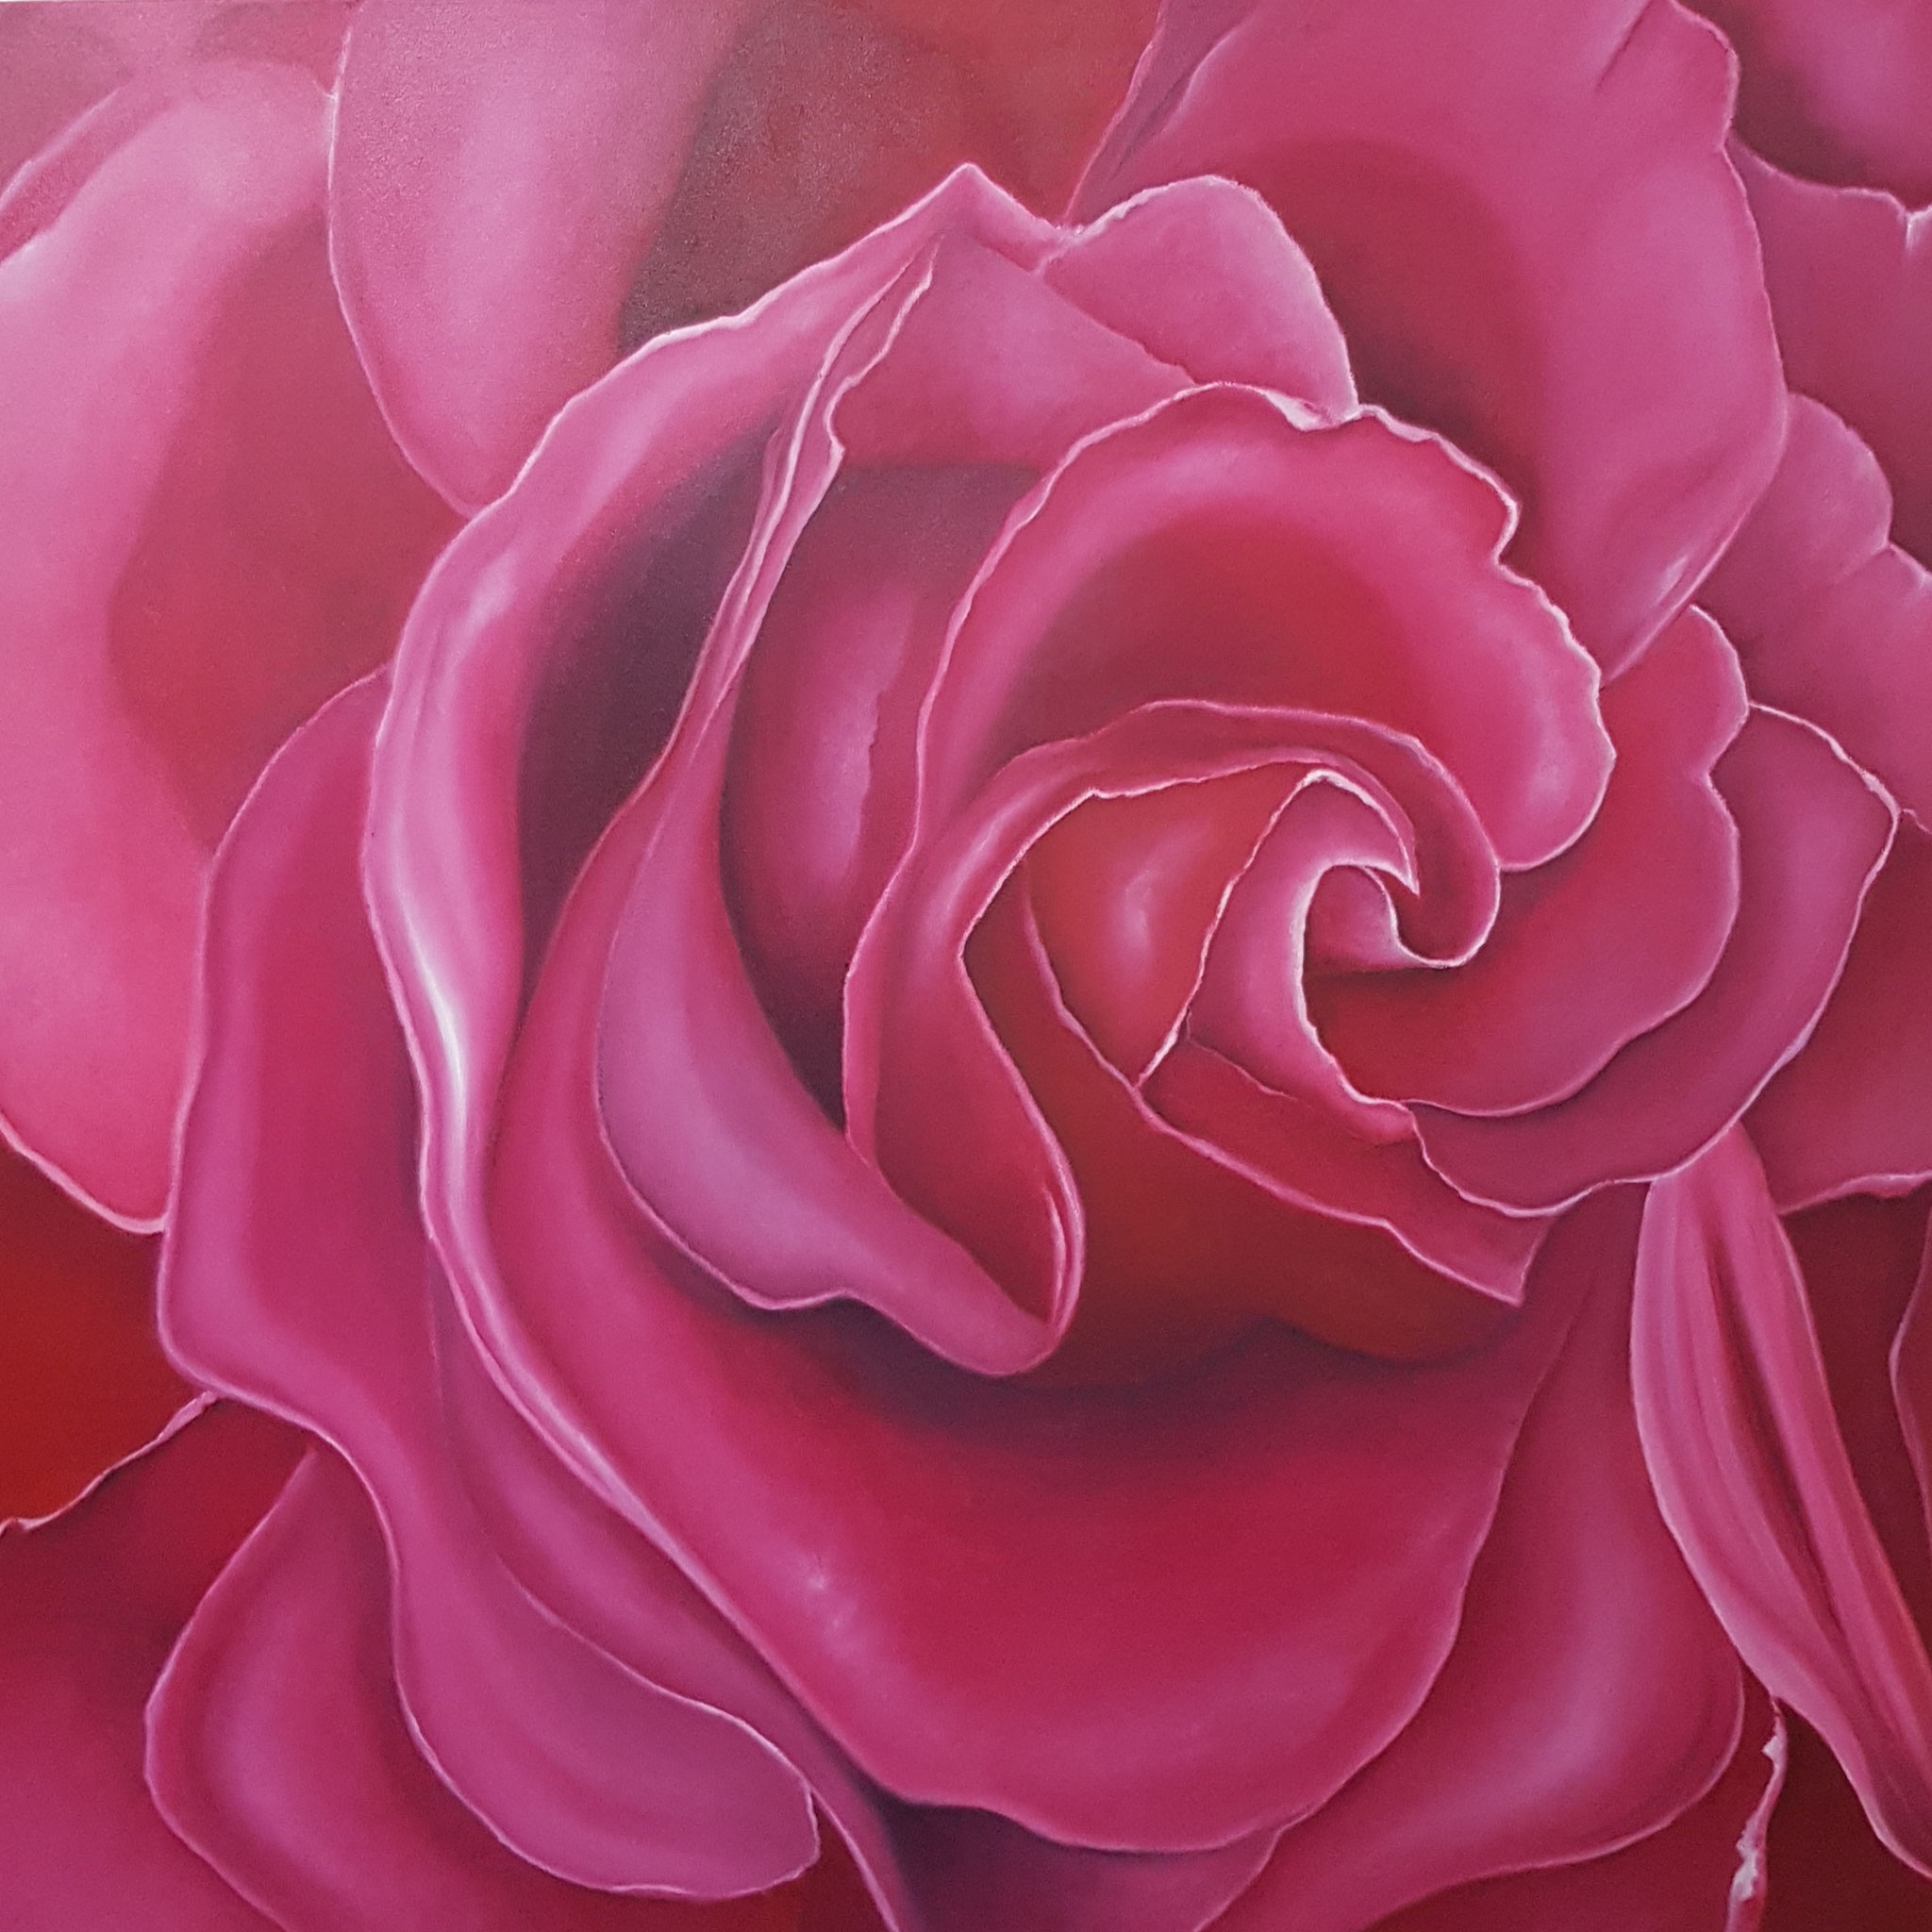 Rose in Pink-Rosenbild-Rheingau-100x100cm-realistische-Malerei-Malereien-Bilder-kaufen-mieten